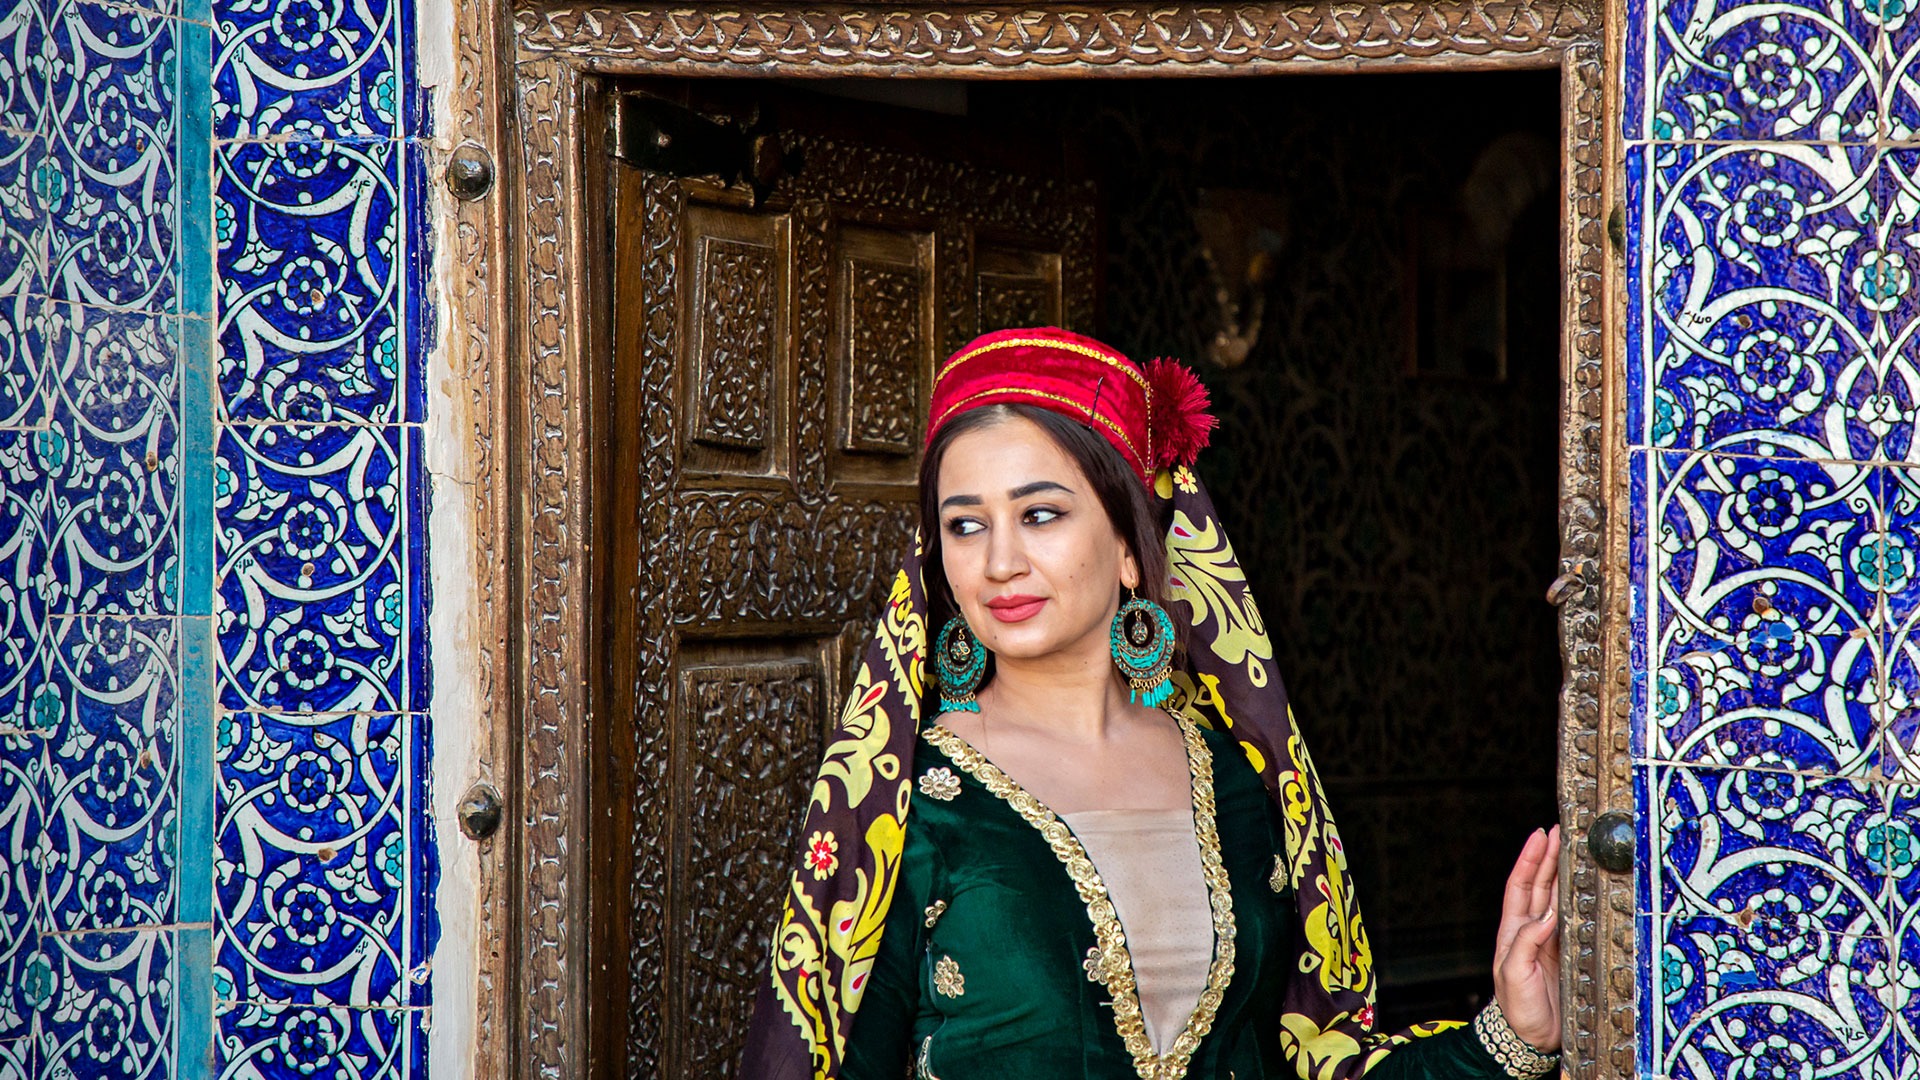 Uzbek woman, Khiva, Uzbekistan